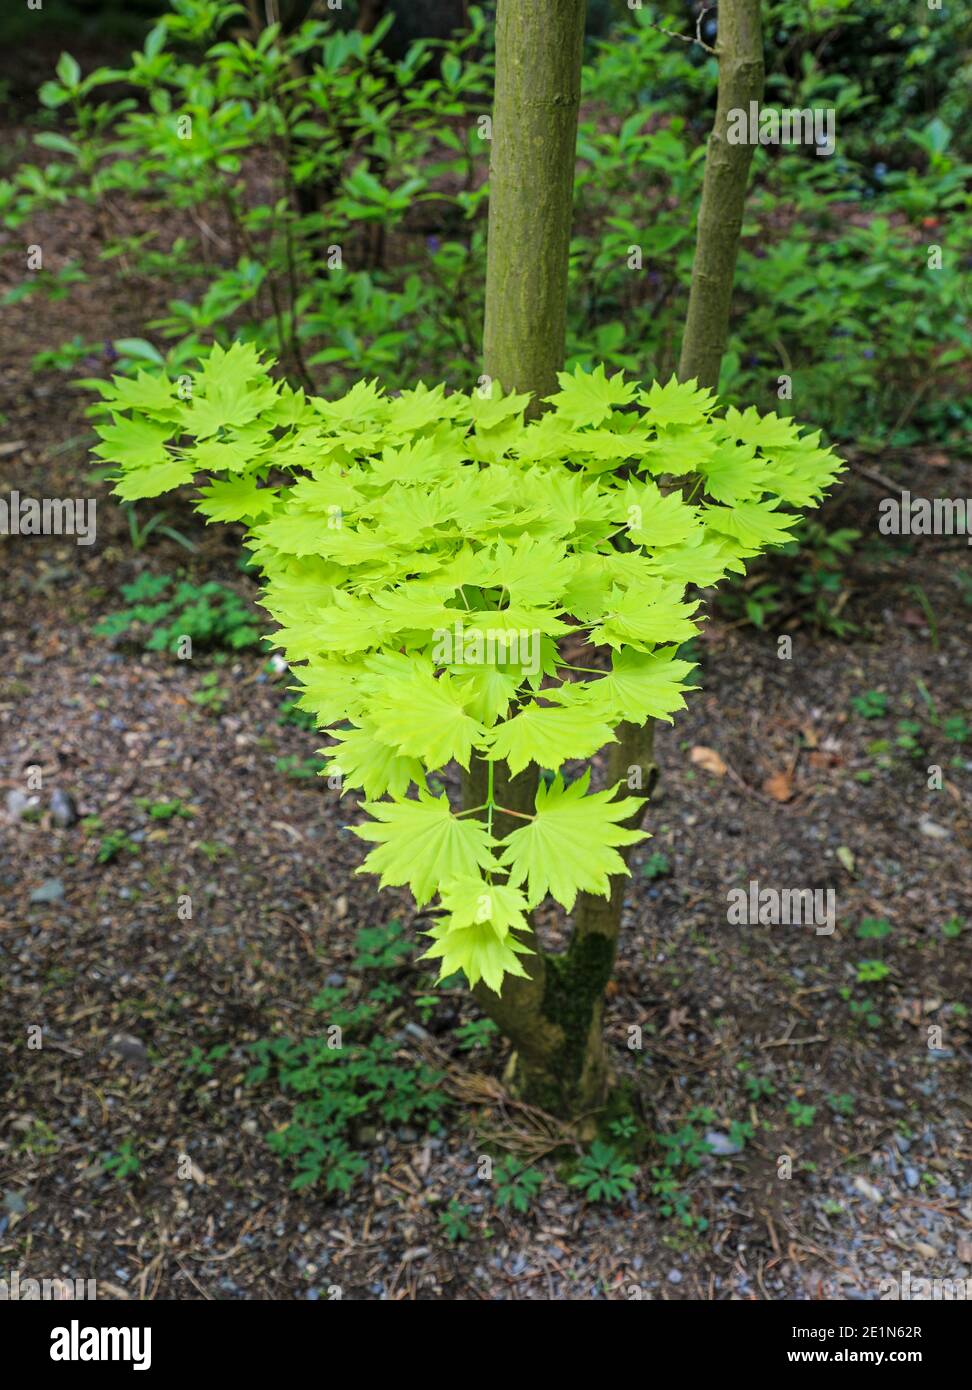 Goldener japanischer Ahorn (Acer Japonicum Aureum), Frühling (Mai), Bodnant Gardens, Tal-y-Cafn, Conwy, Wales, Großbritannien Stockfoto